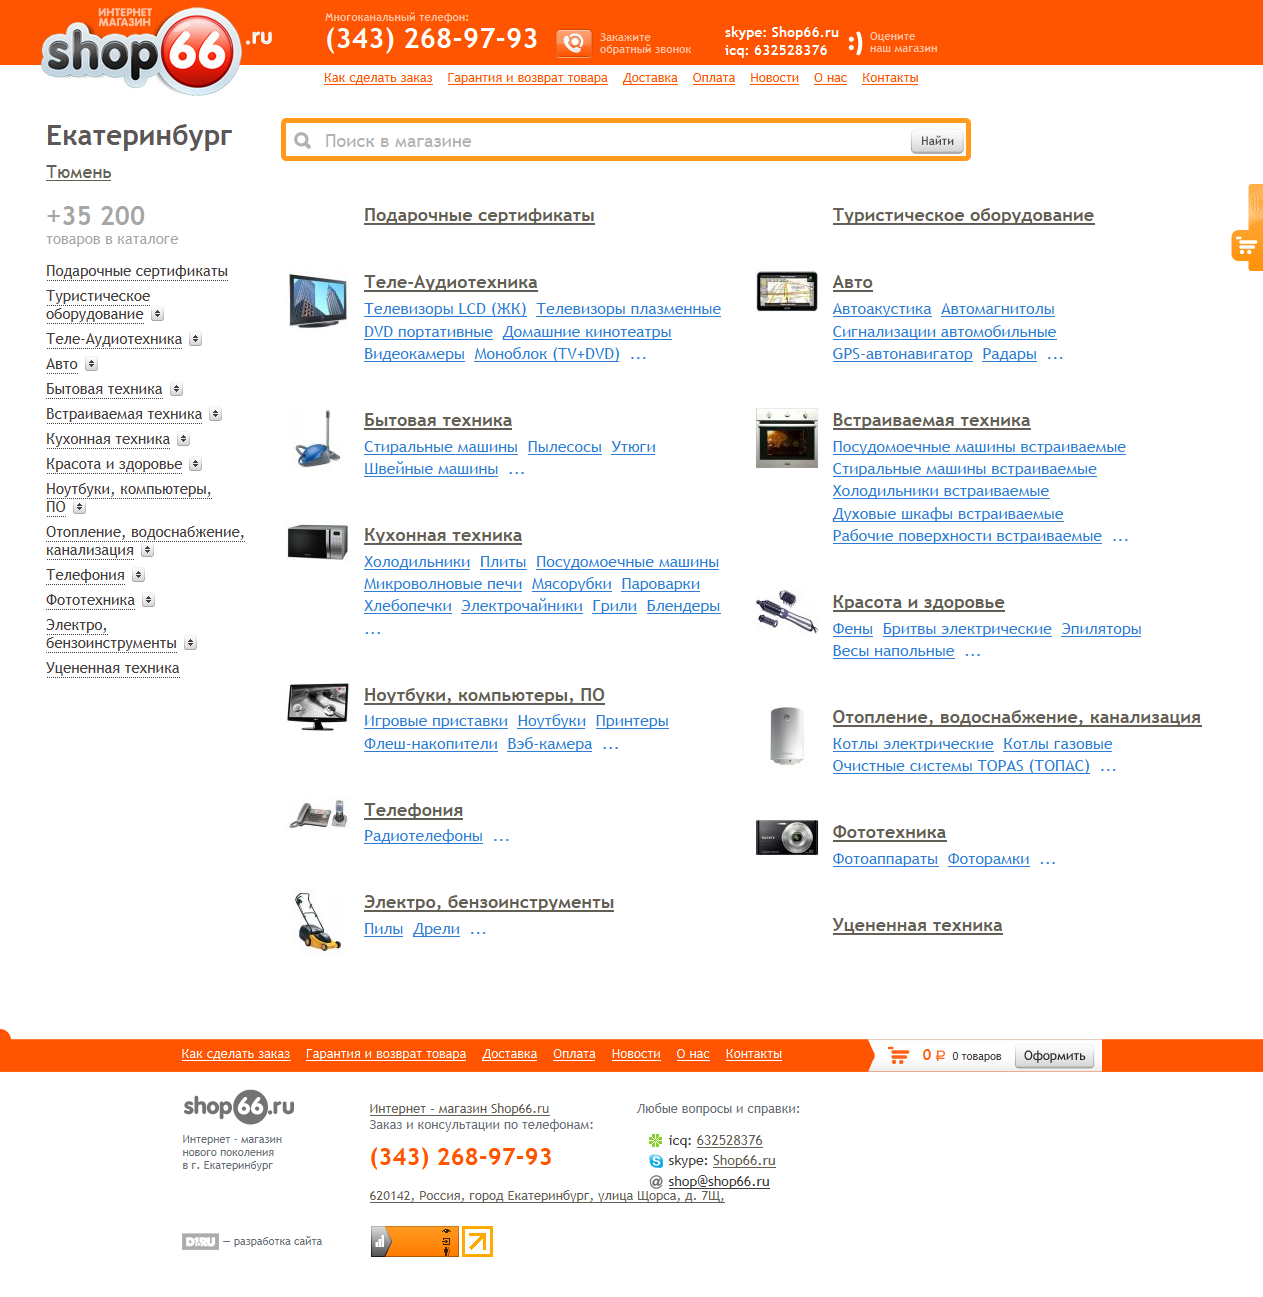 Интернет-магазин Shop66.ru.